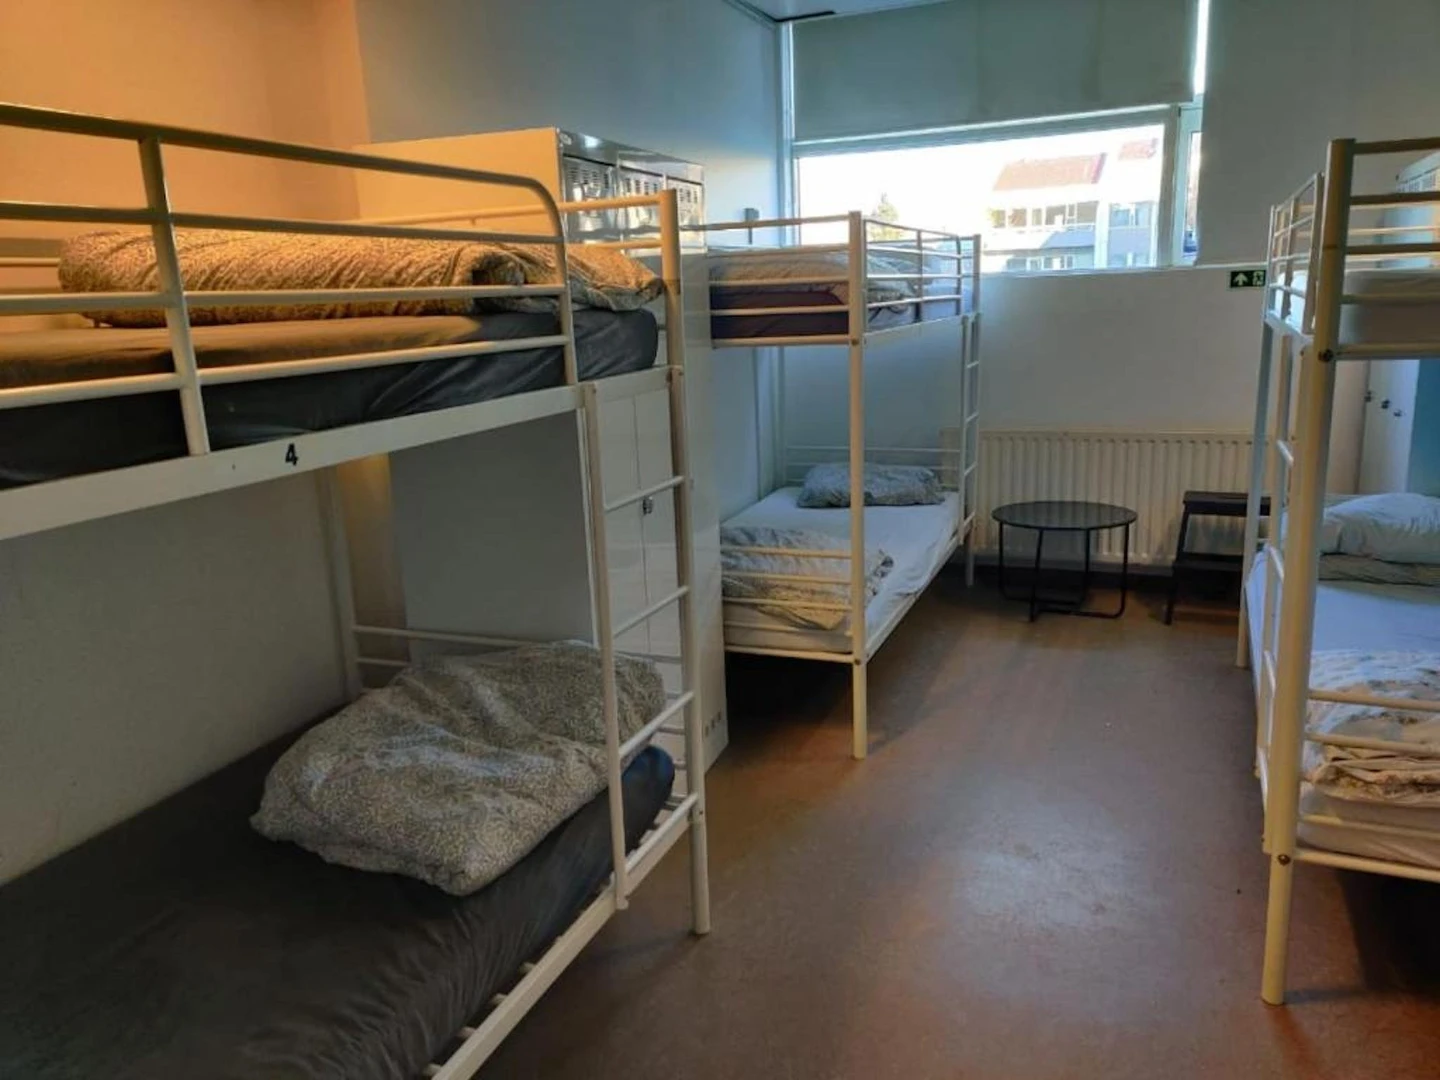 Gemeinsames Zimmer mit einem anderen Studierenden in Reykjavík